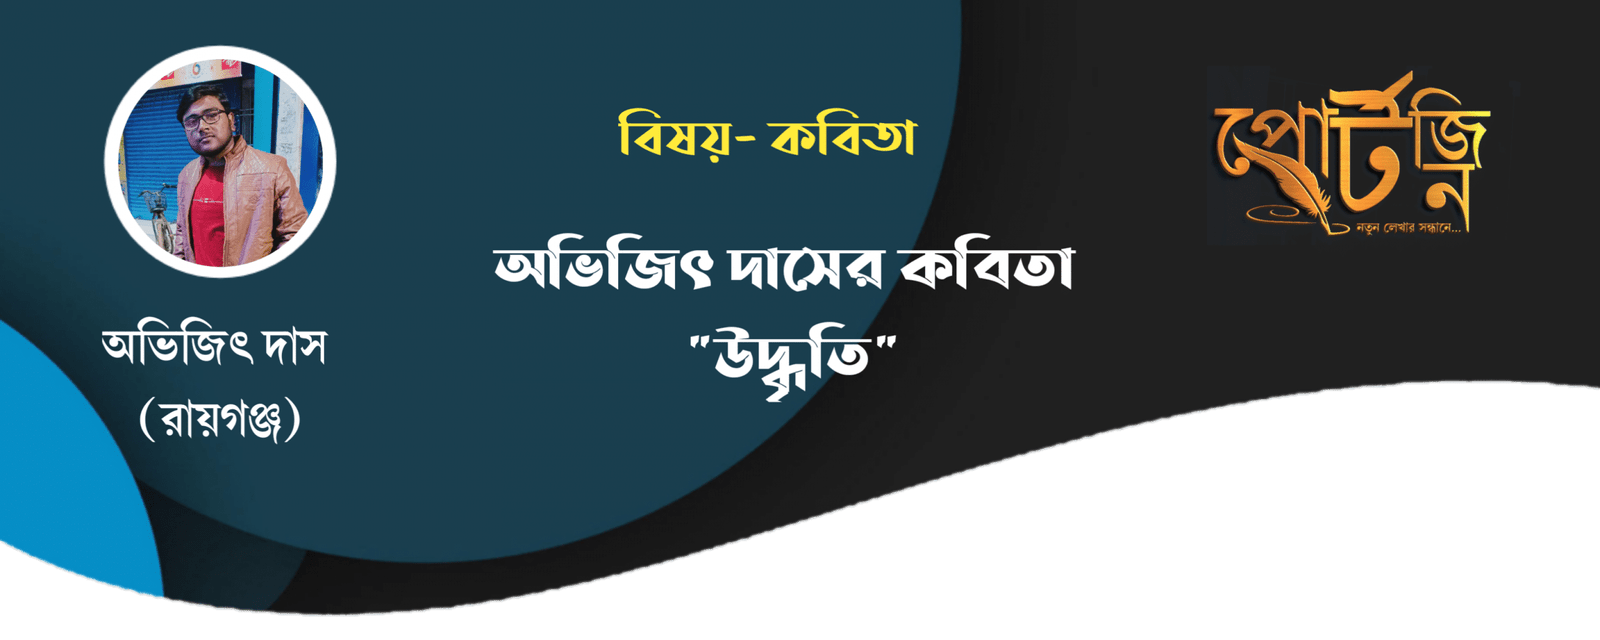 bangla kobita abhijit das